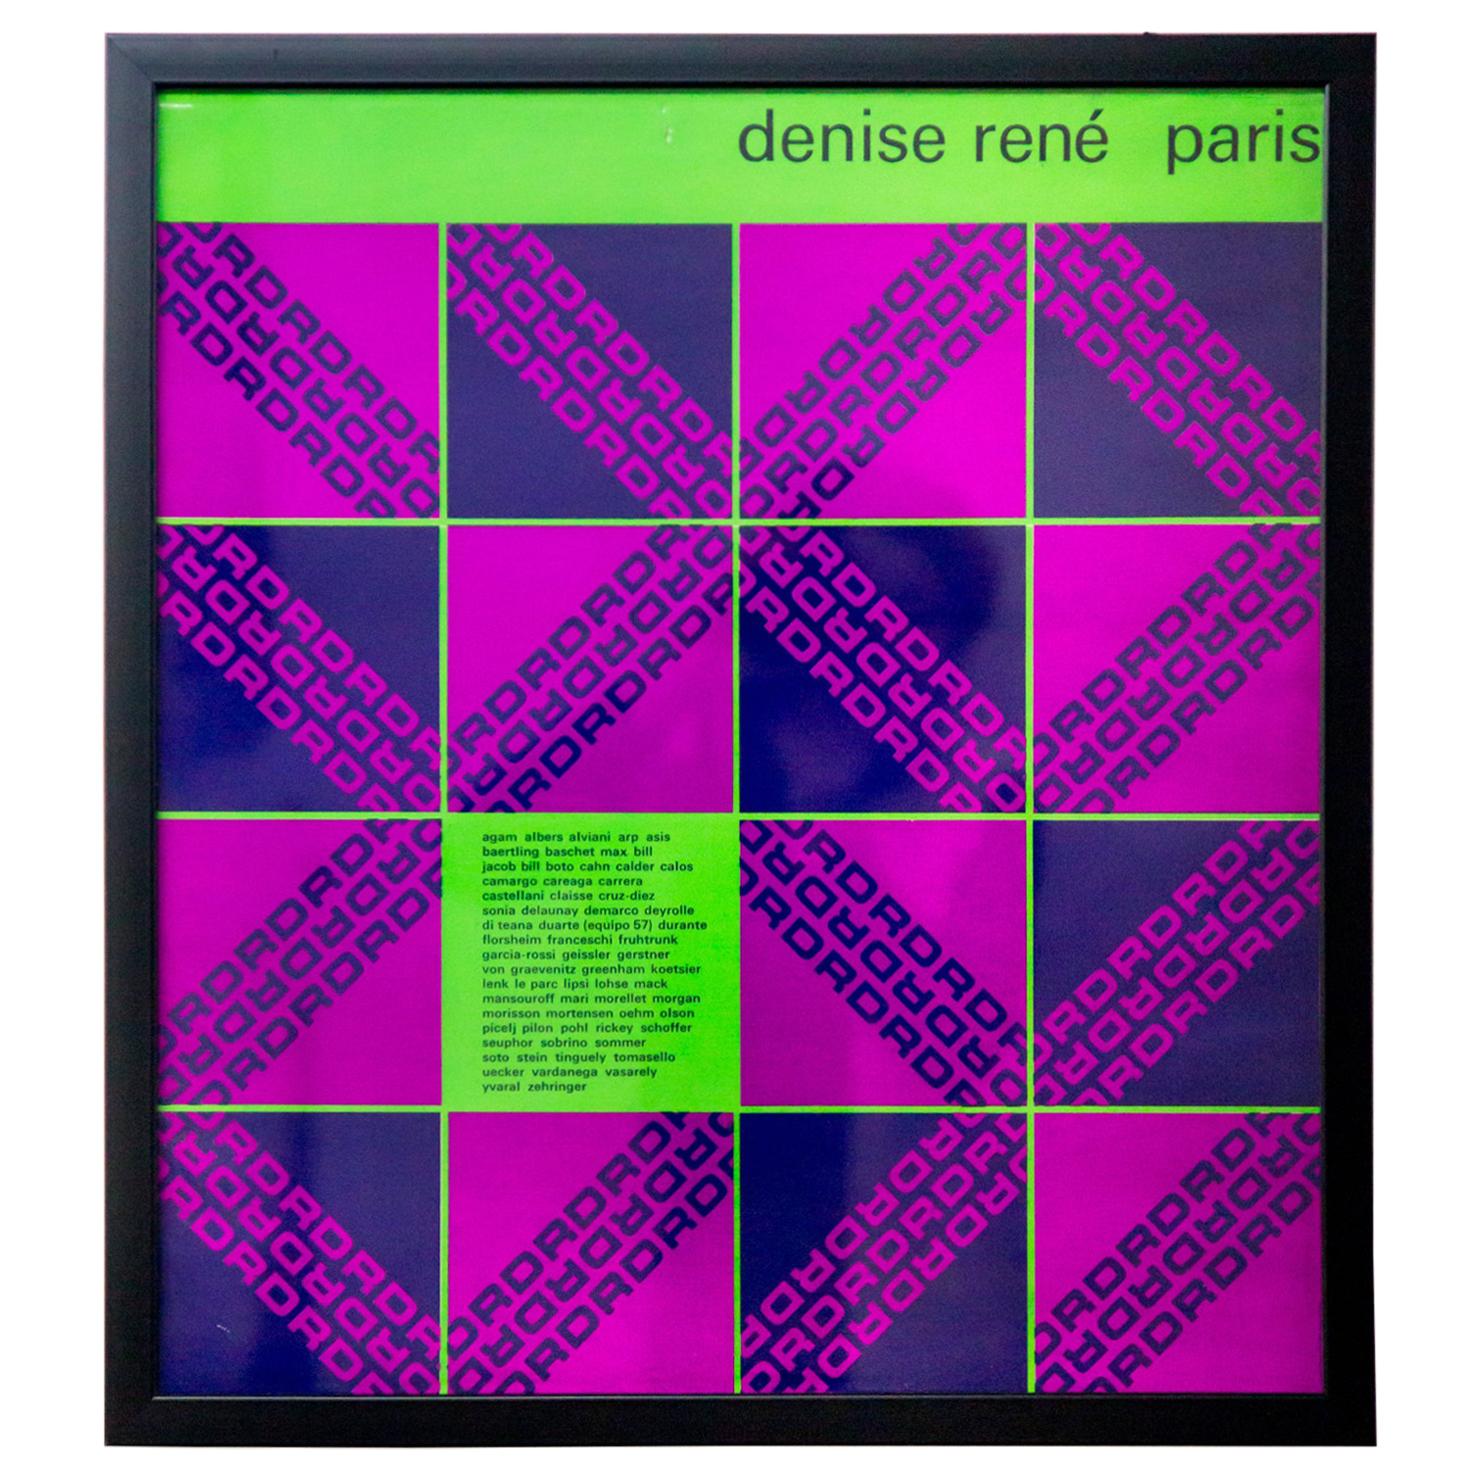 Vintage Denise René Paris Gallery Exhibition Poster